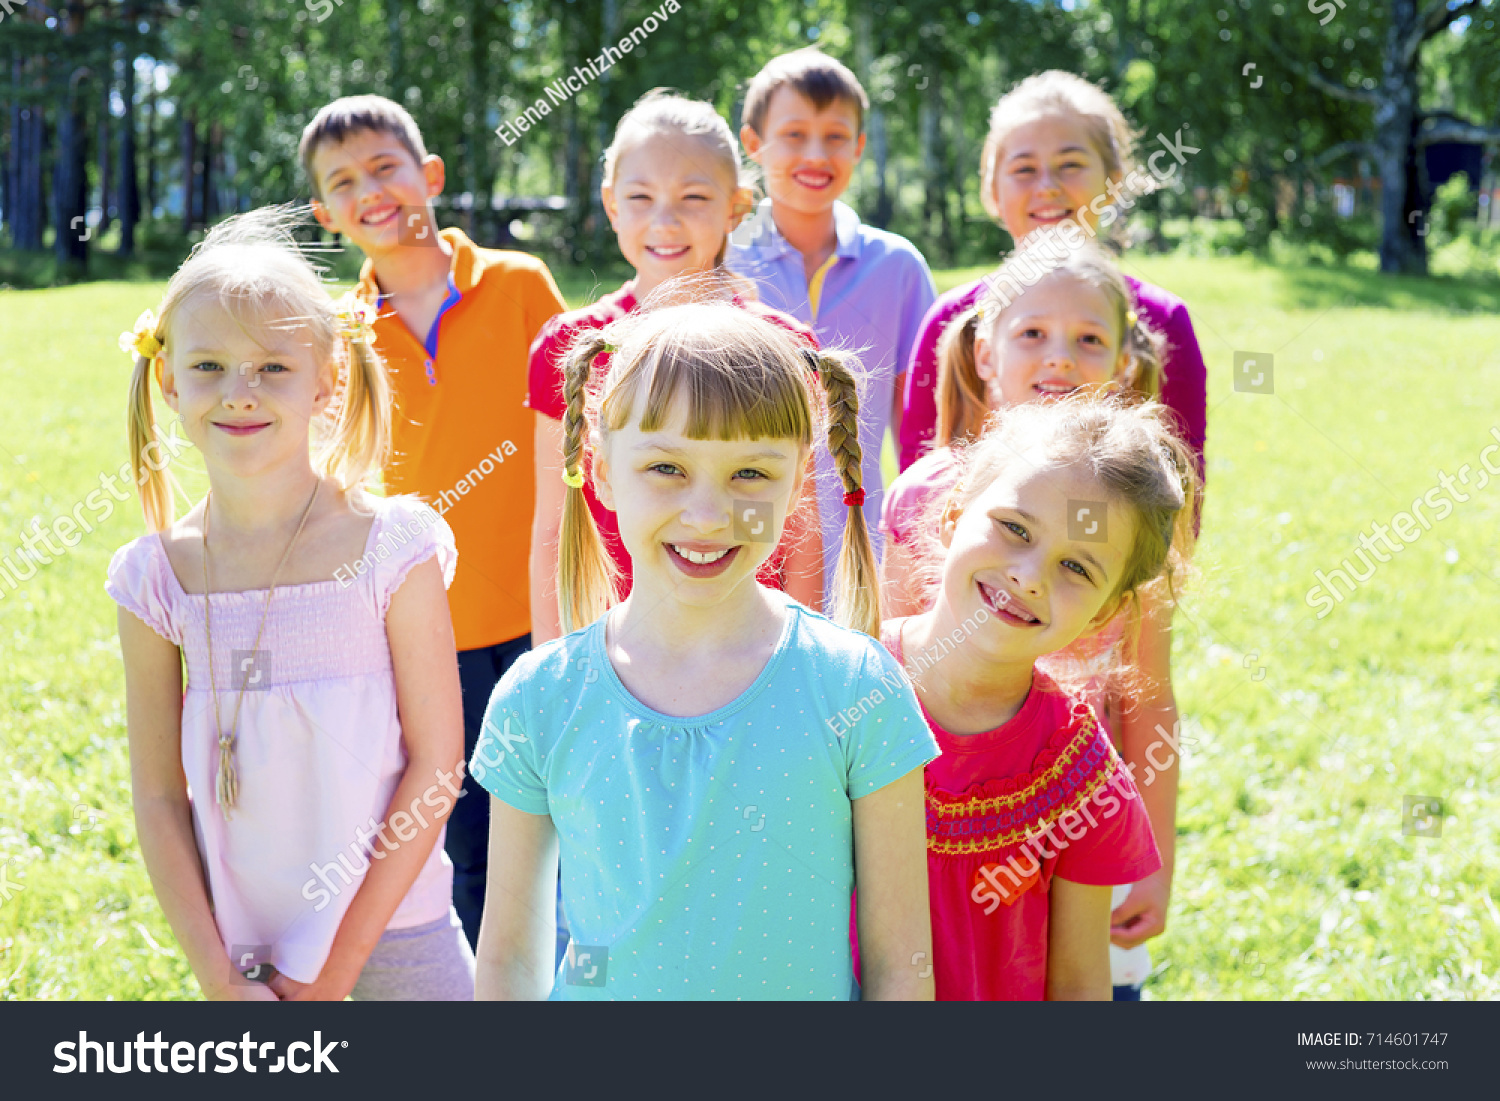 Kids outside in park #714601747